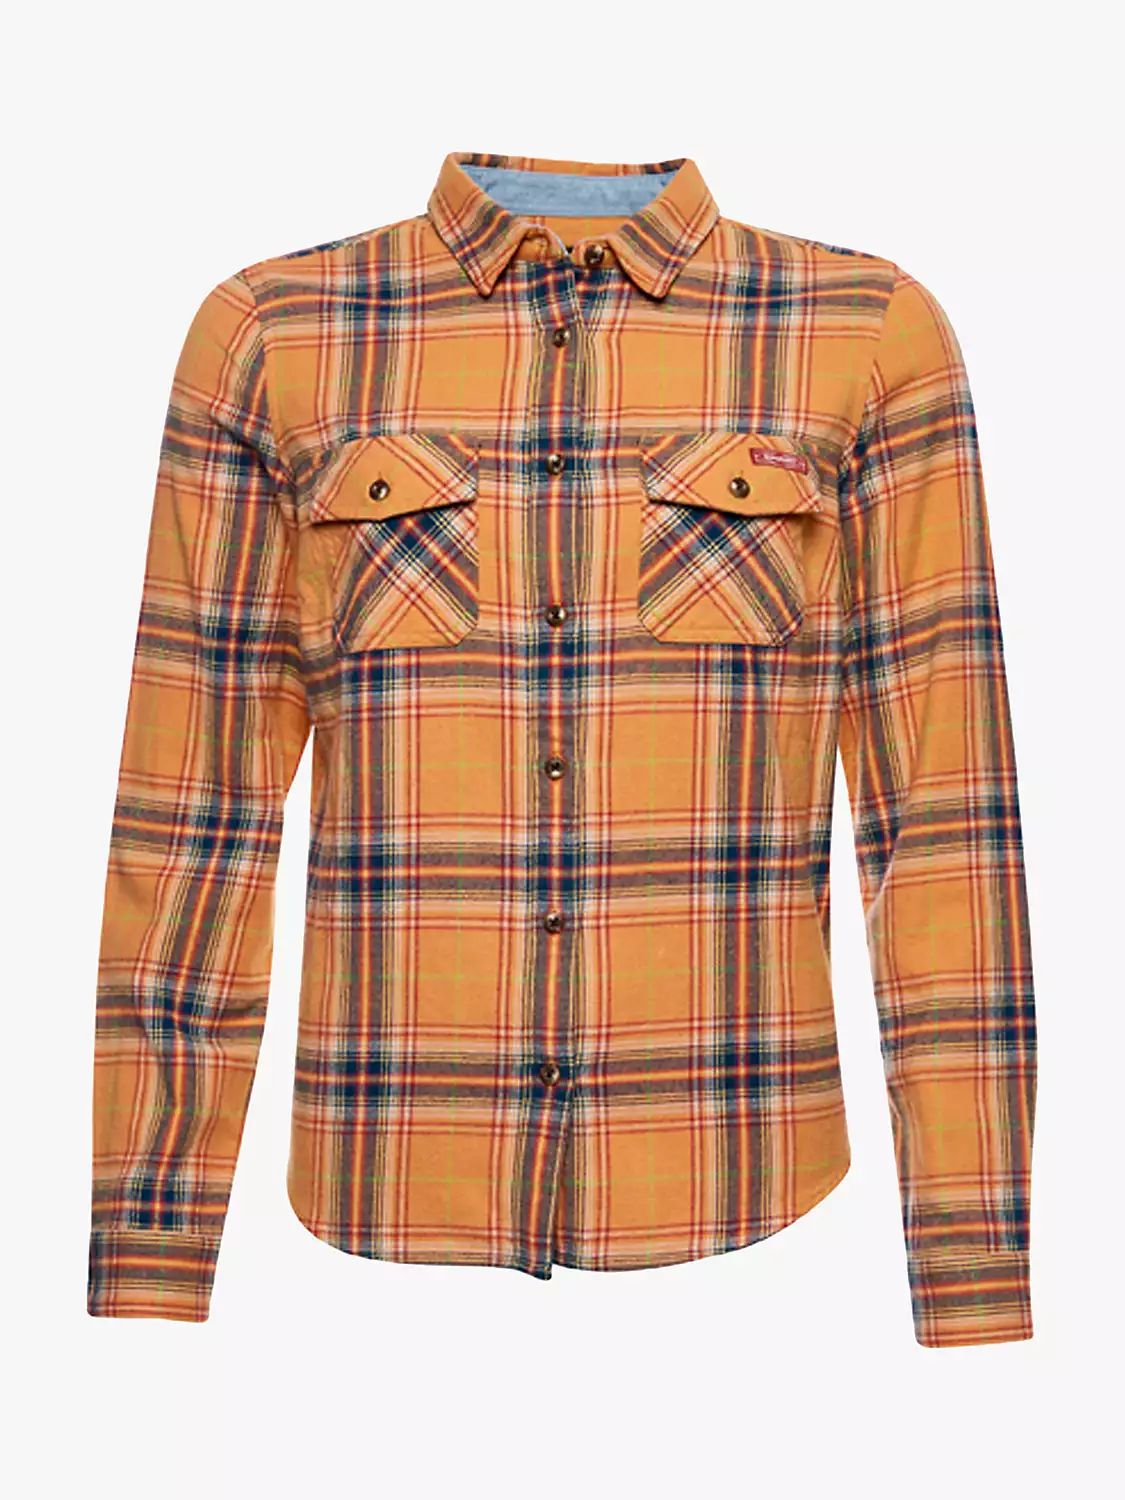 Superdry Organic Cotton Lumberjack Check Shirt, Sunset Yellow | John Lewis (UK)